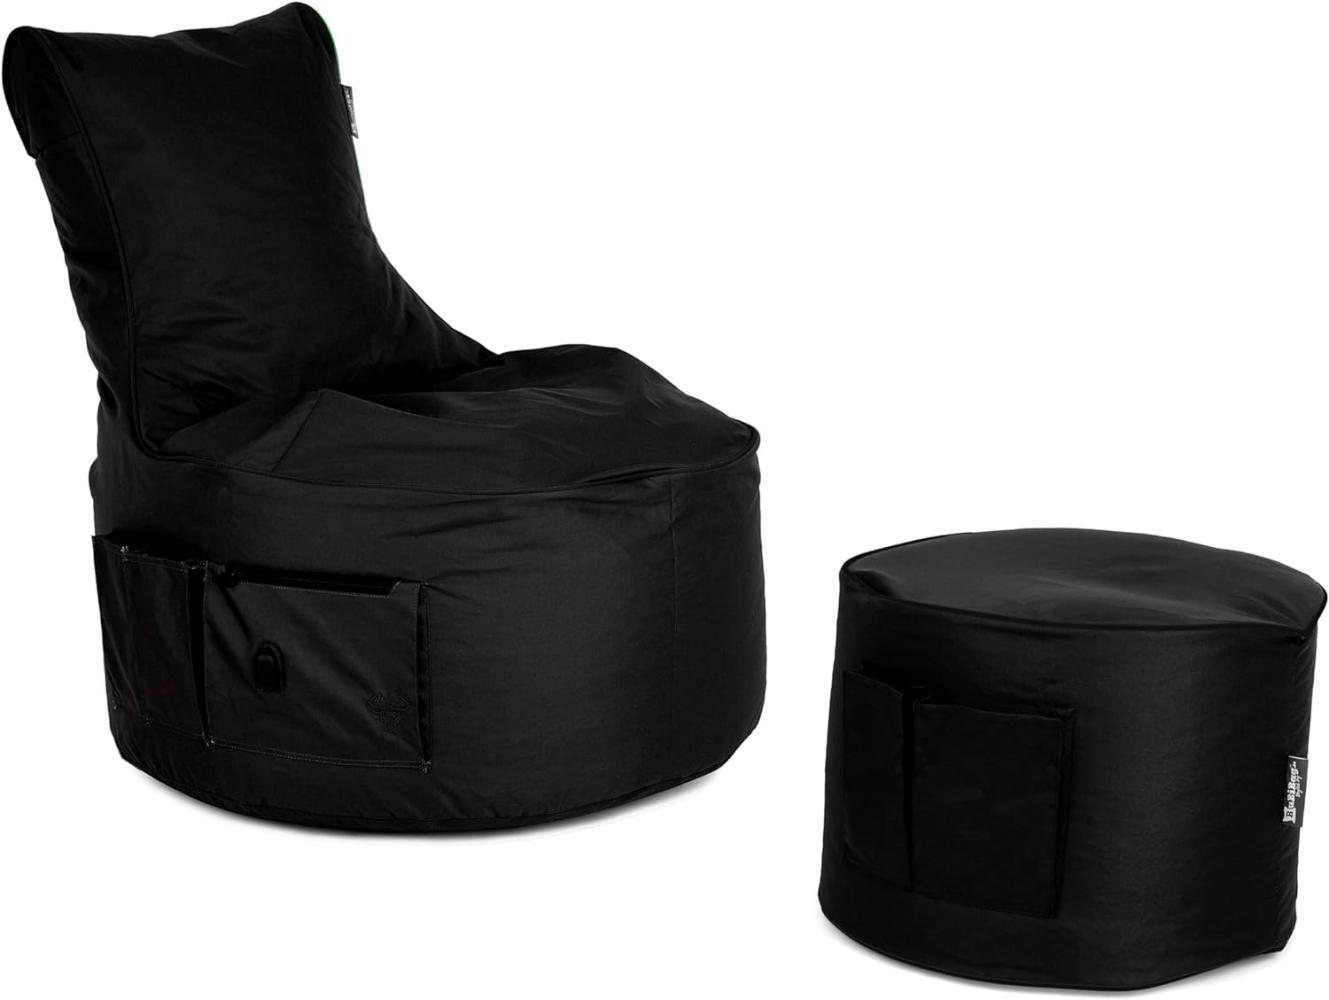 Maverick Gaming Sitzsack mit Hocker für Erwachsene und Kinder - mit USB Ausgang, Seitentaschen für Controller - Gamer Sitzsäcke für Indoor & Outdoor (schwarz) - BubiBag Bild 1